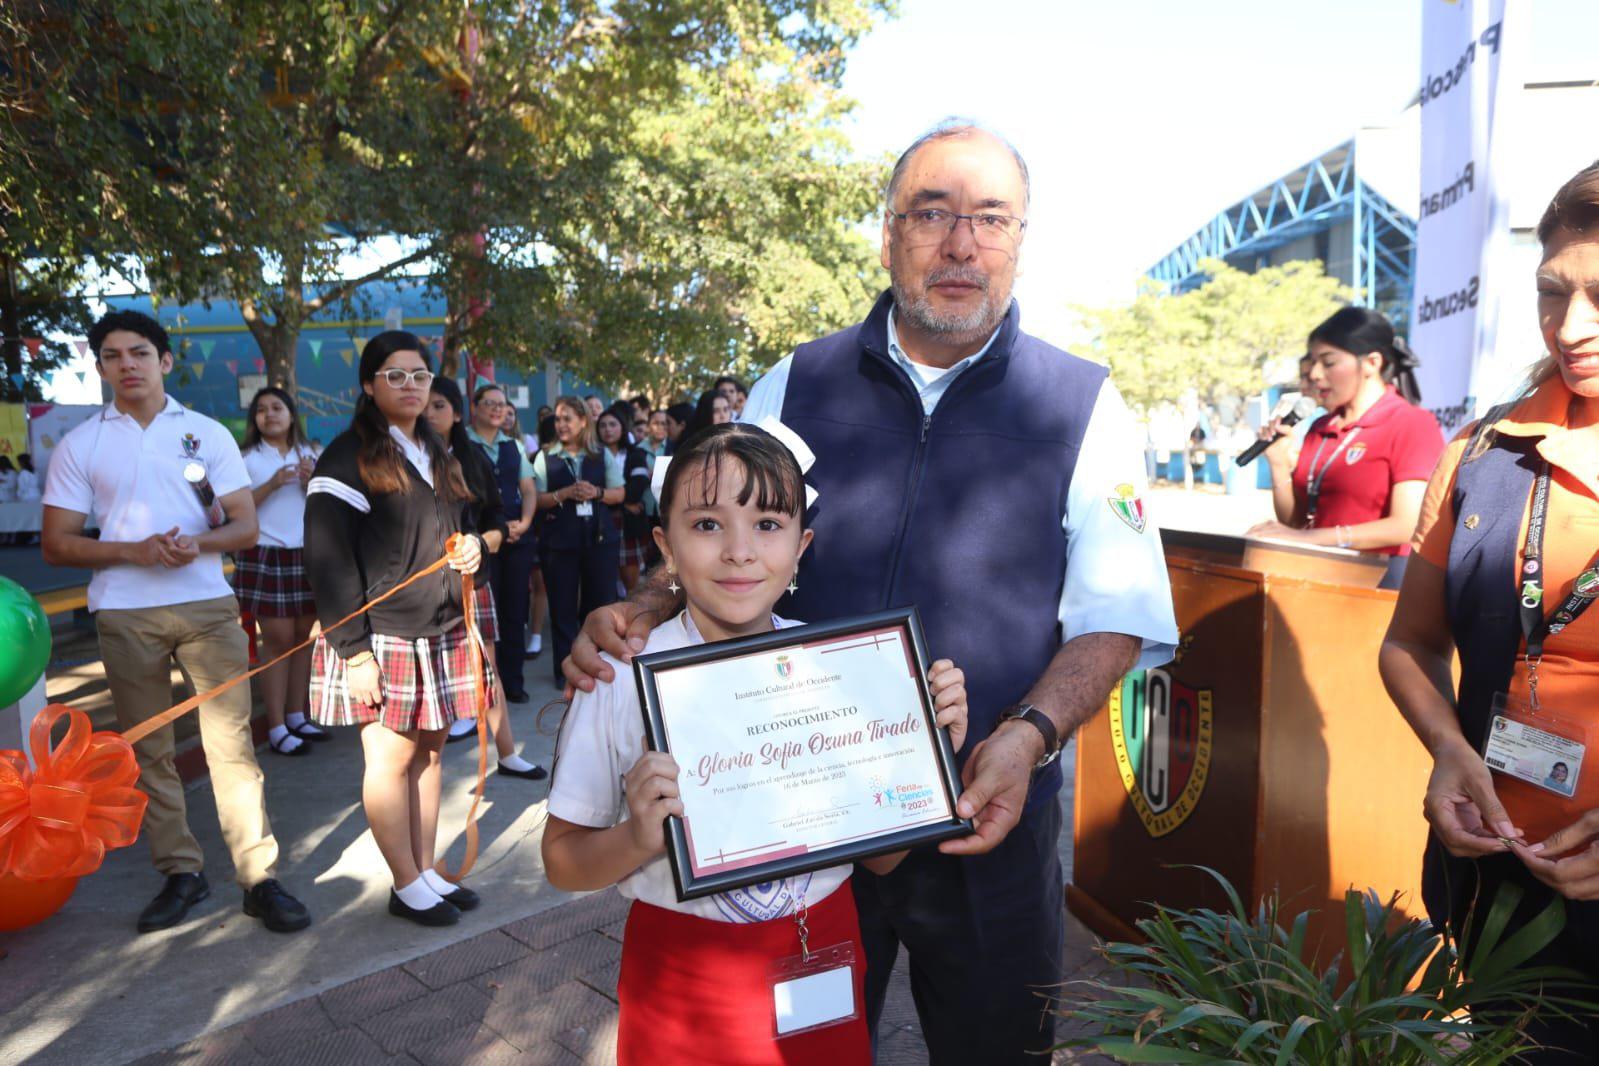 $!La pequeña Gloria Sofía Osuna Tirado recibió un reconocimiento de manos del Padre Gabriel Zavala Soria, director del ICO.